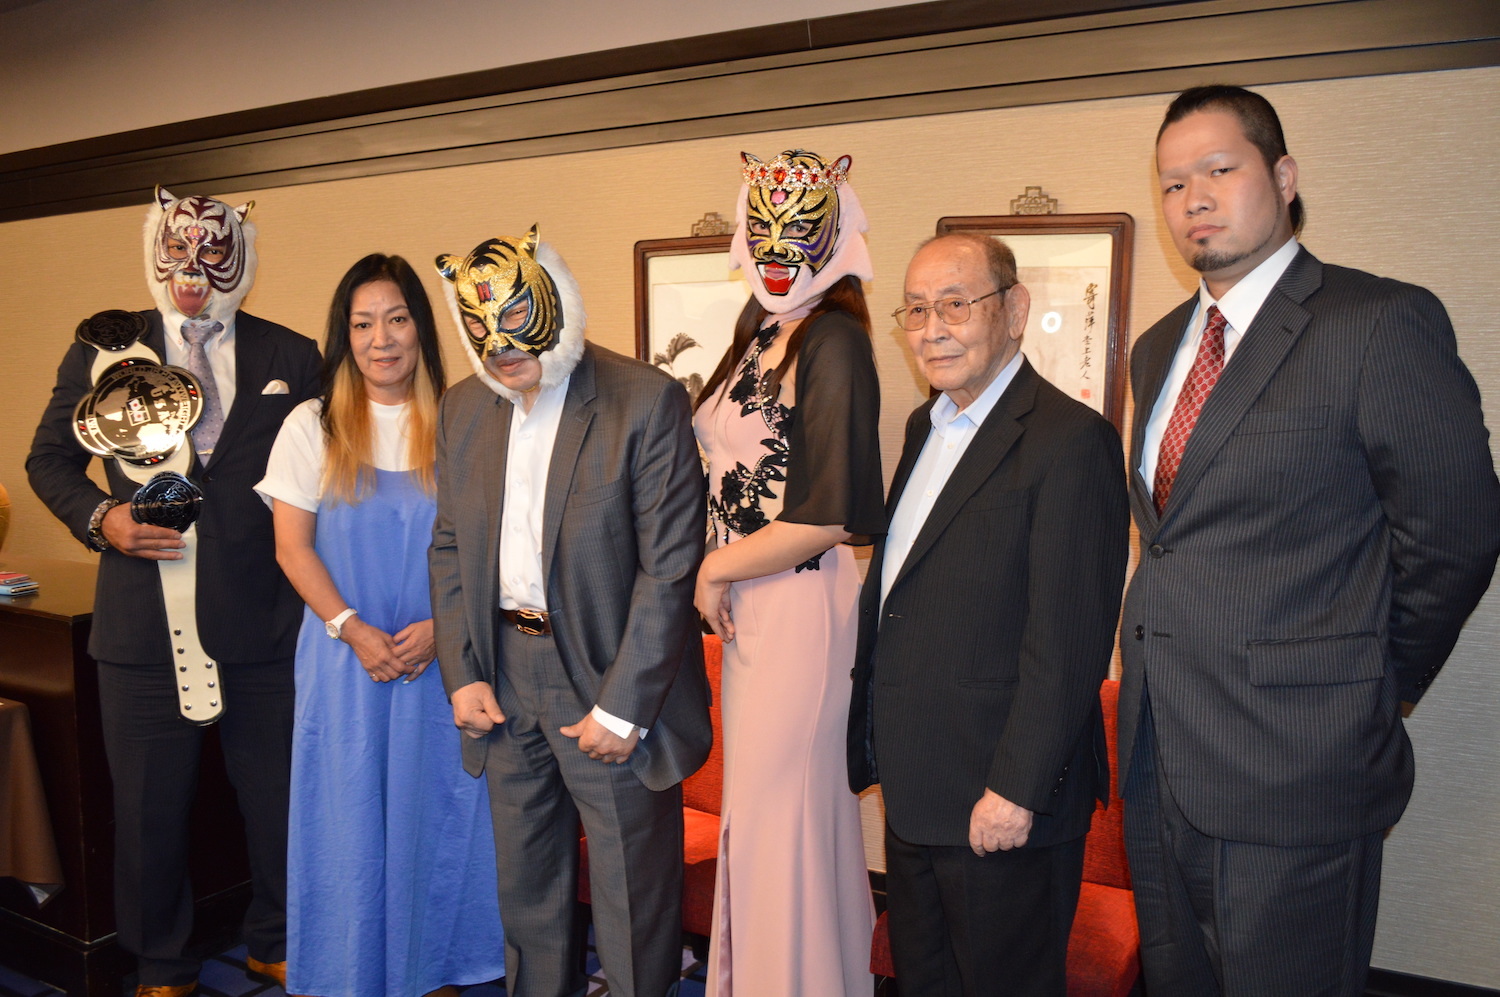 記者会見に出席した左から、スーパー・タイガー、ジャガー横田、初代タイガーマスク、タイガー・クイーン、新間寿会長、間下隼人